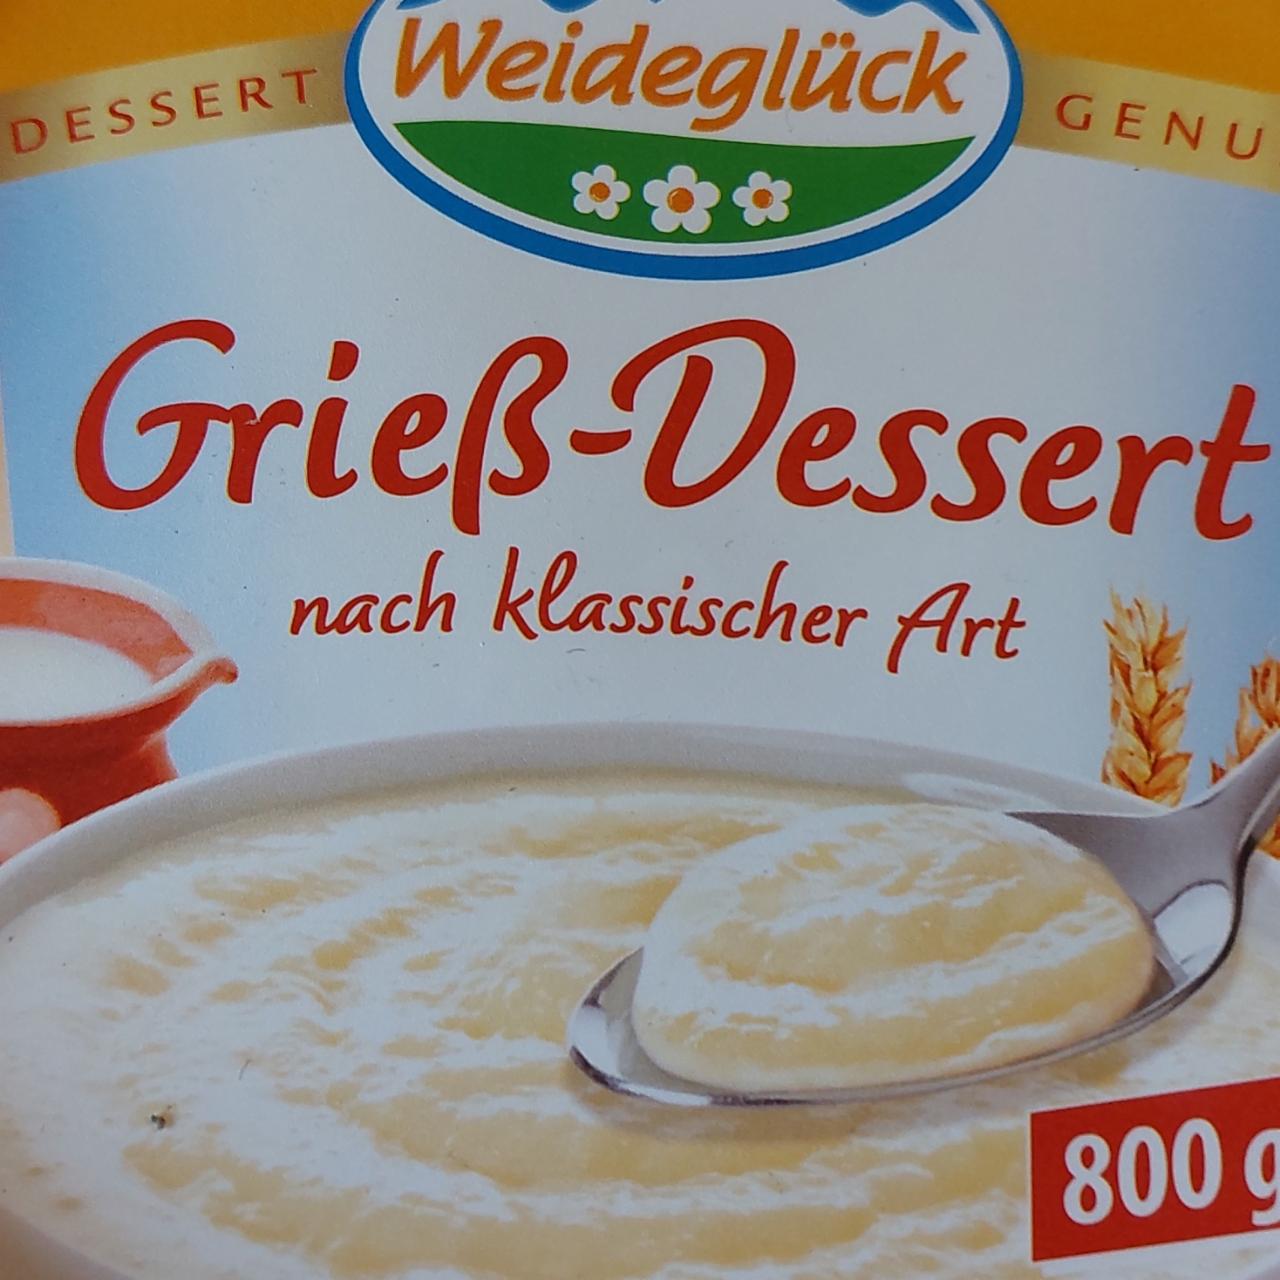 Фото - Grieß-Dessert Weideglück